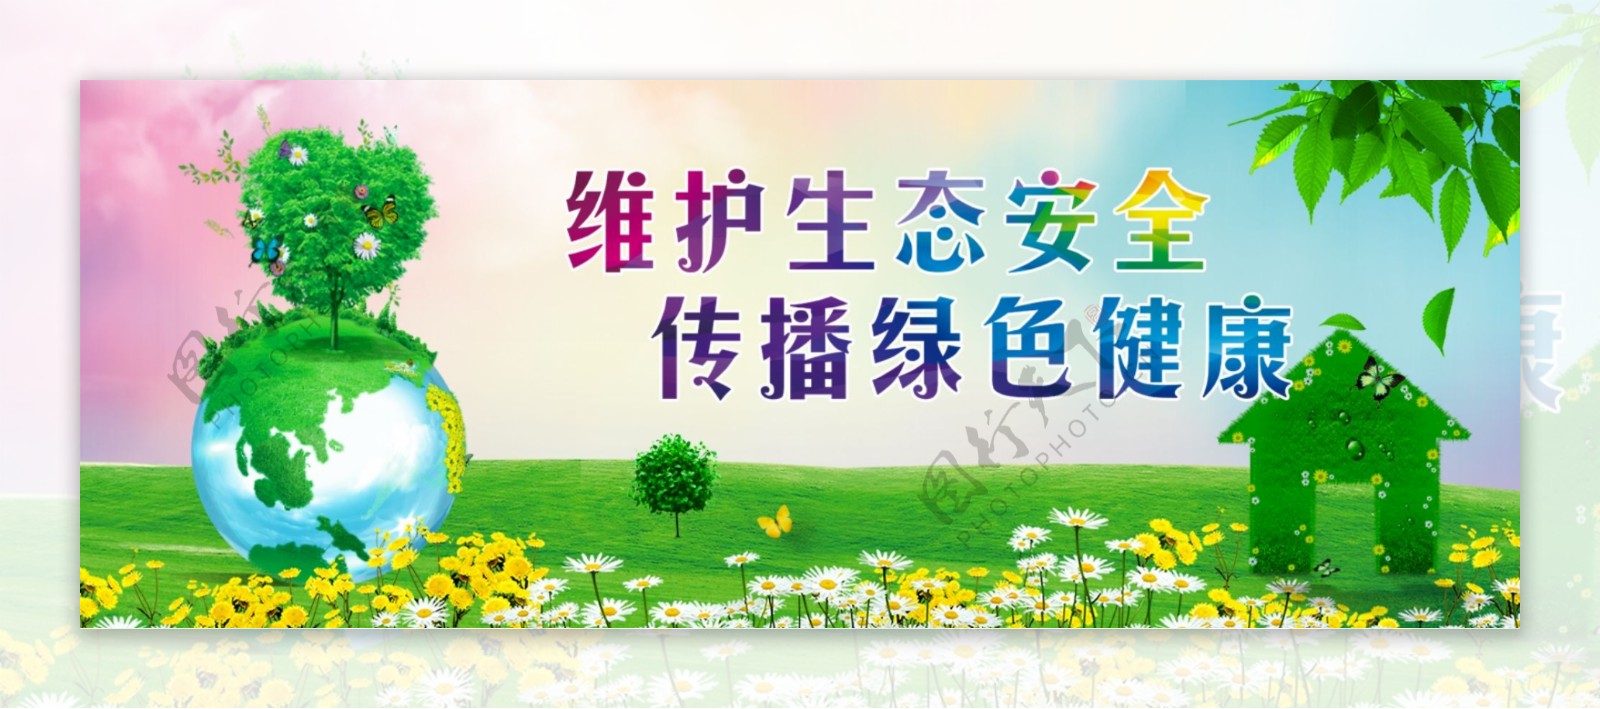 环保绿色生态网页banner